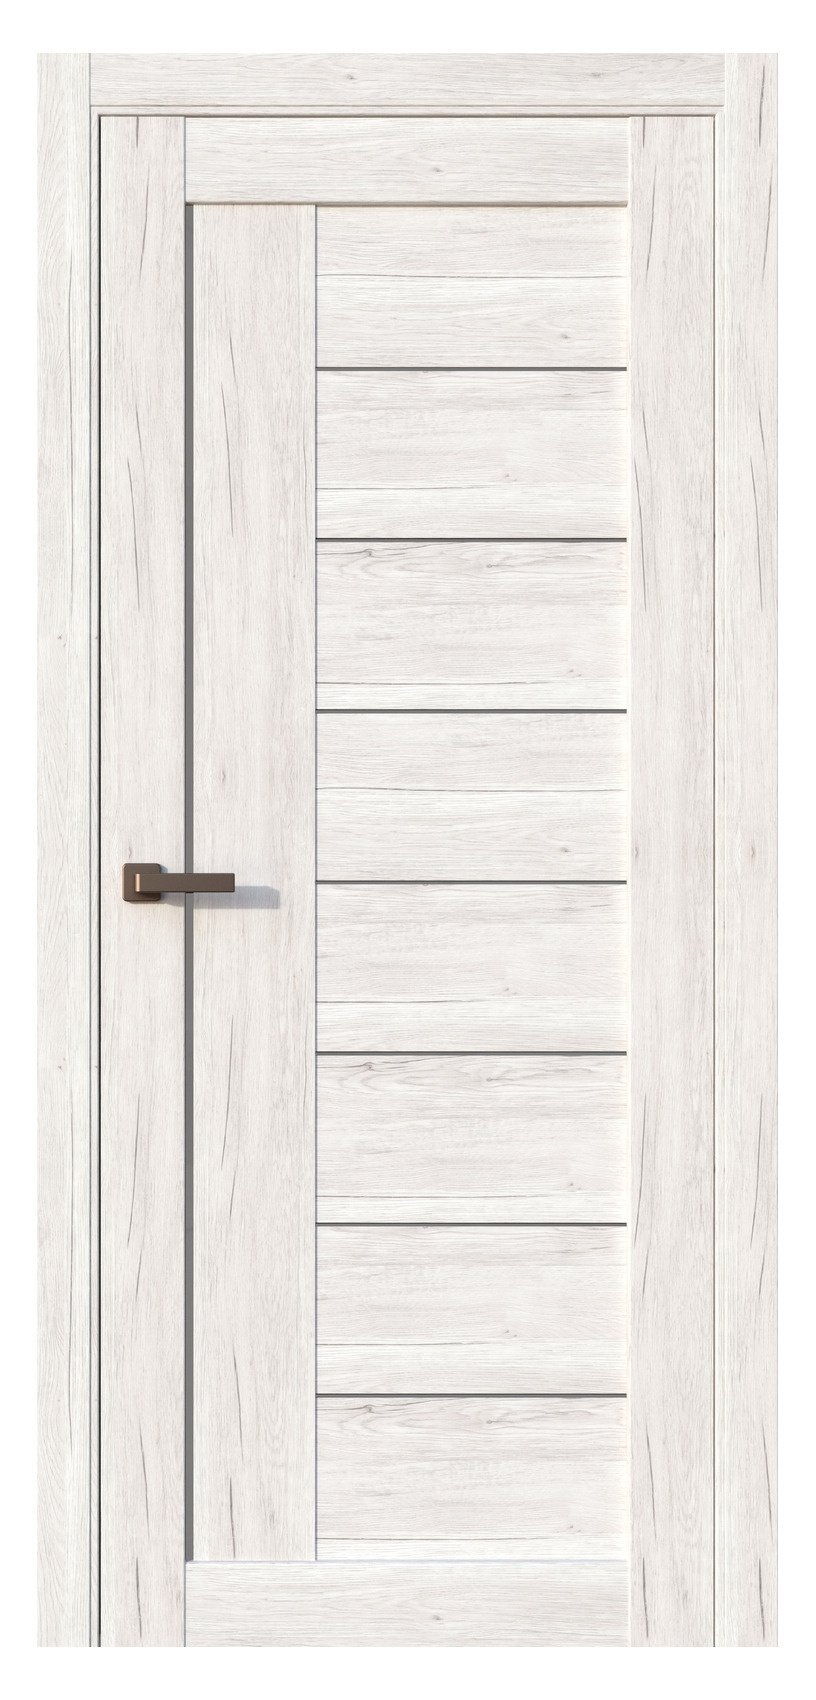 Questdoors Межкомнатная дверь QC1, арт. 17503 - фото №1